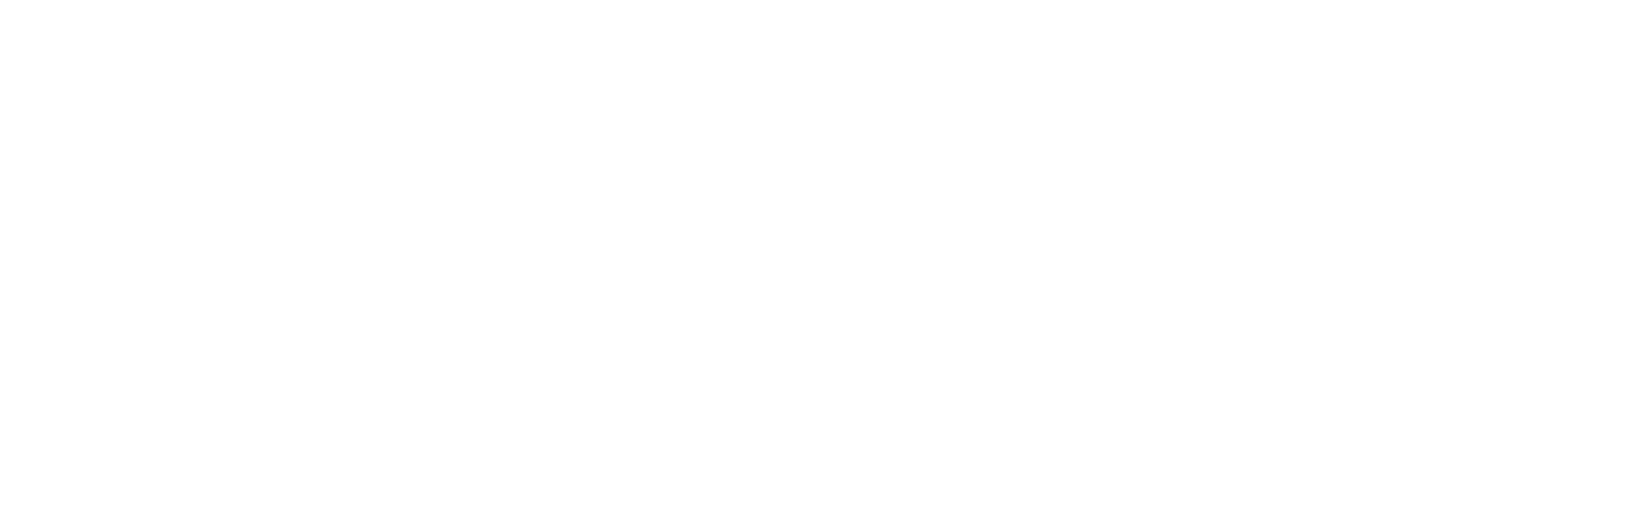 sebastien_catoire_logo_white